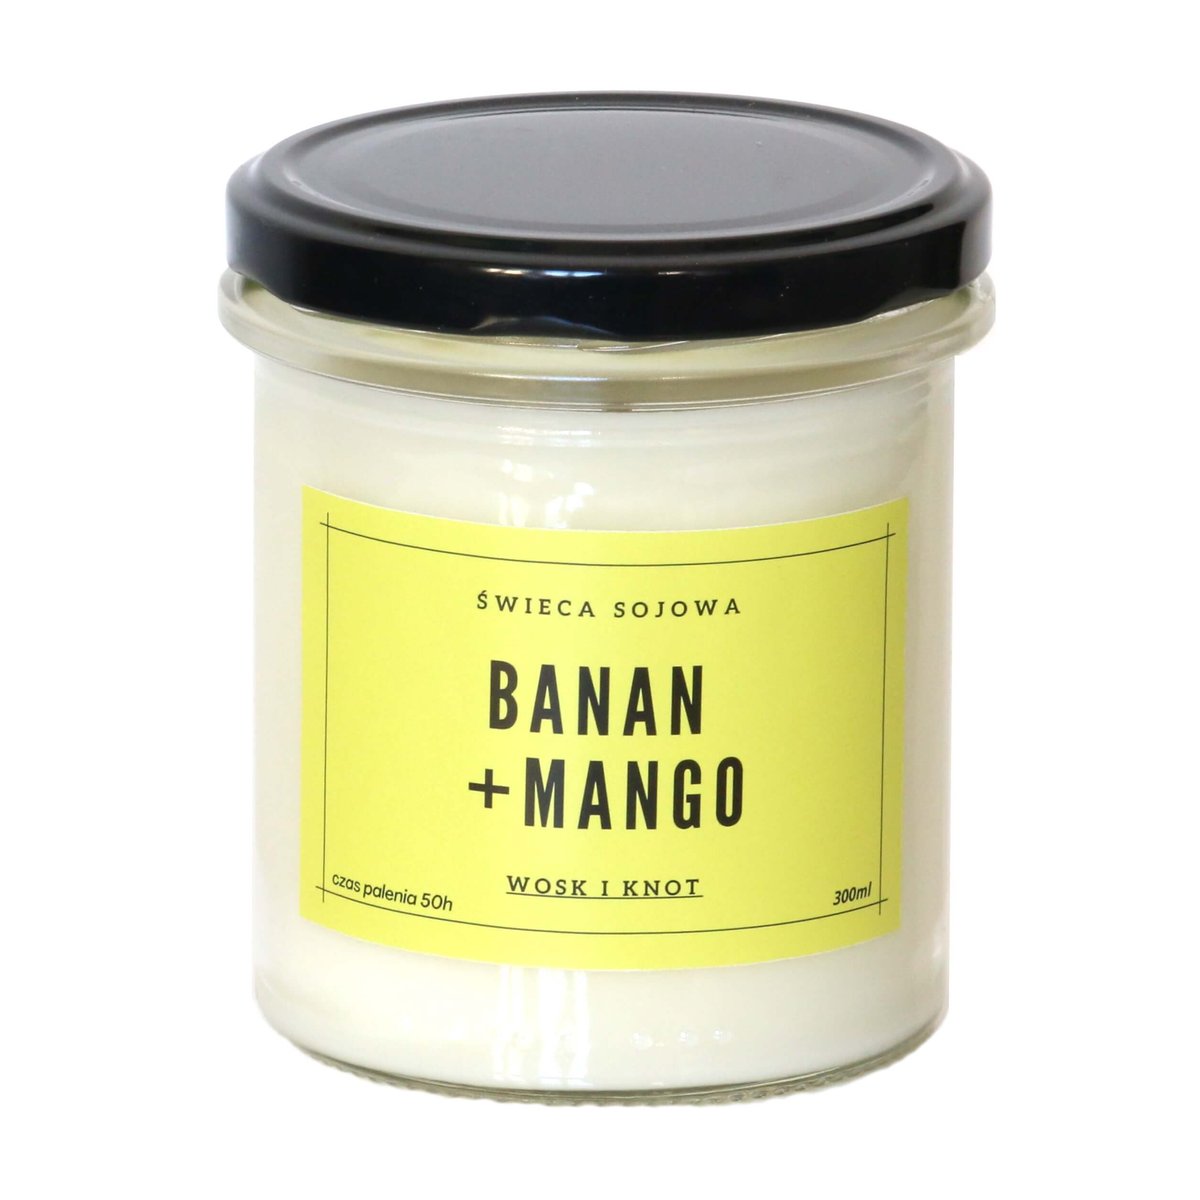 Świeca sojowa BANAN + MANGO - aromatyczna ręcznie robiona naturalna świeca zapachowa w słoiczku 300ml